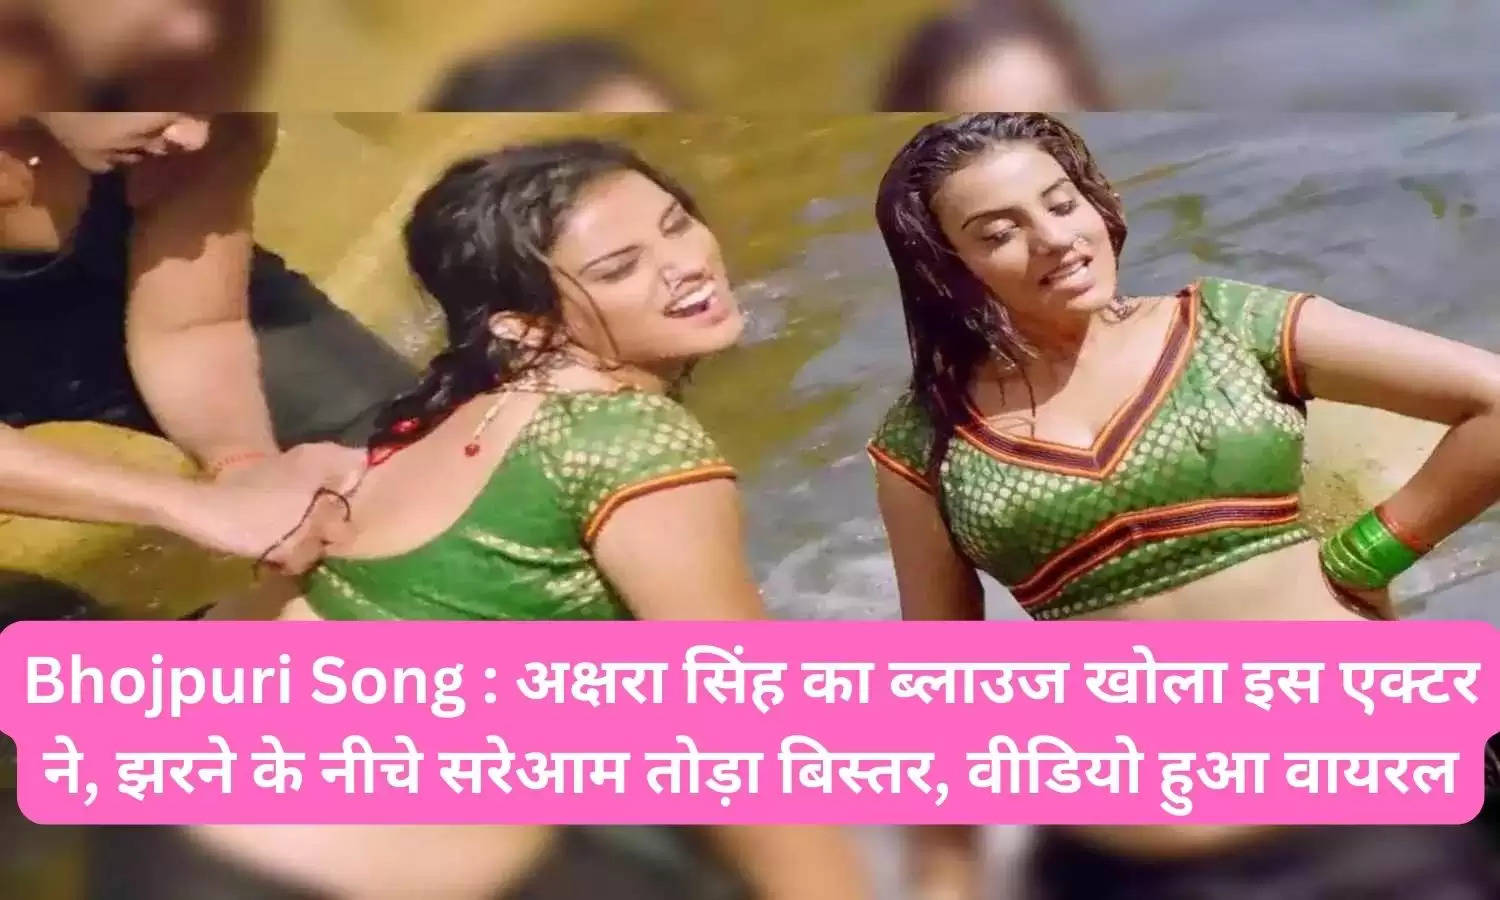 Bhojpuri Song : अक्षरा सिंह का ब्लाउज खोला इस एक्टर ने, झरने के नीचे सरेआम तोड़ा बिस्तर, वीडियो हुआ वायरल